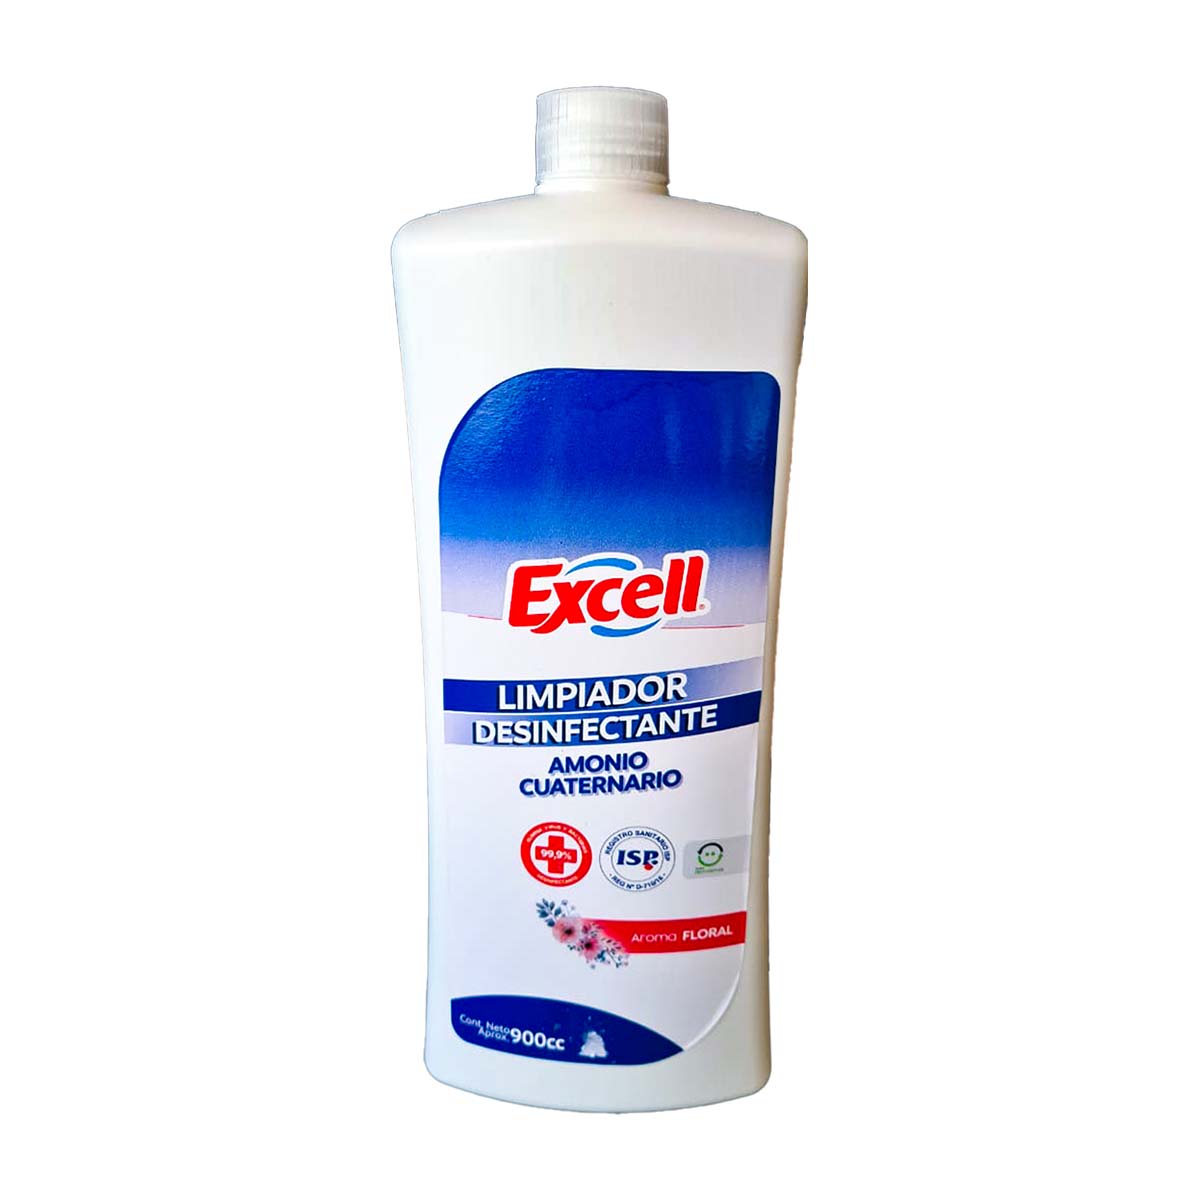 Limpiador Desinfectante con Amonio Cuaternario Aroma Floral Elimina 99,99% de Virus y Bacterias Excell variedades